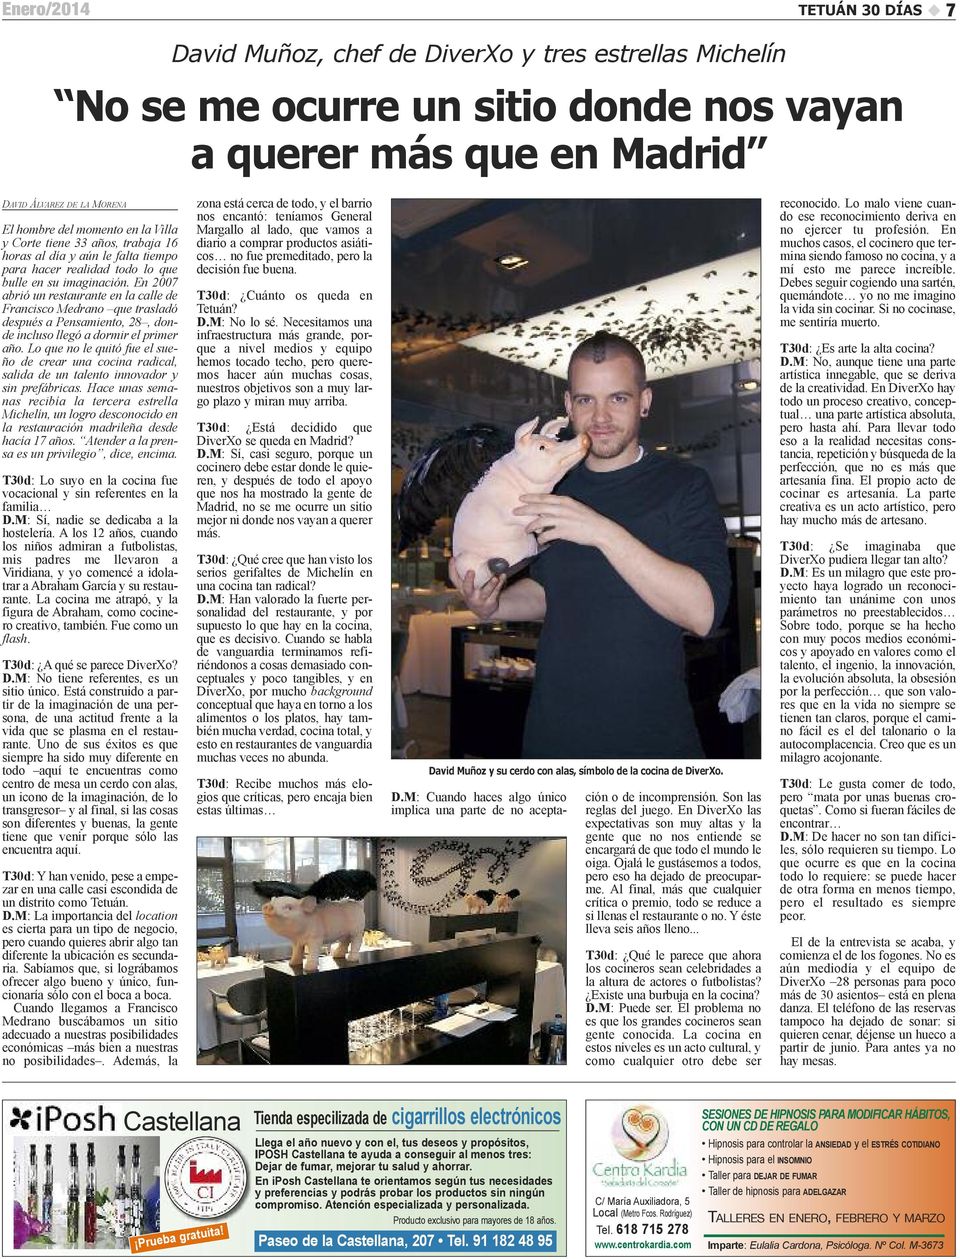 en 2007 abrió un restaurante en la calle de Francisco Medrano que trasladó después a Pensamiento, 28, donde incluso llegó a dormir el primer año.